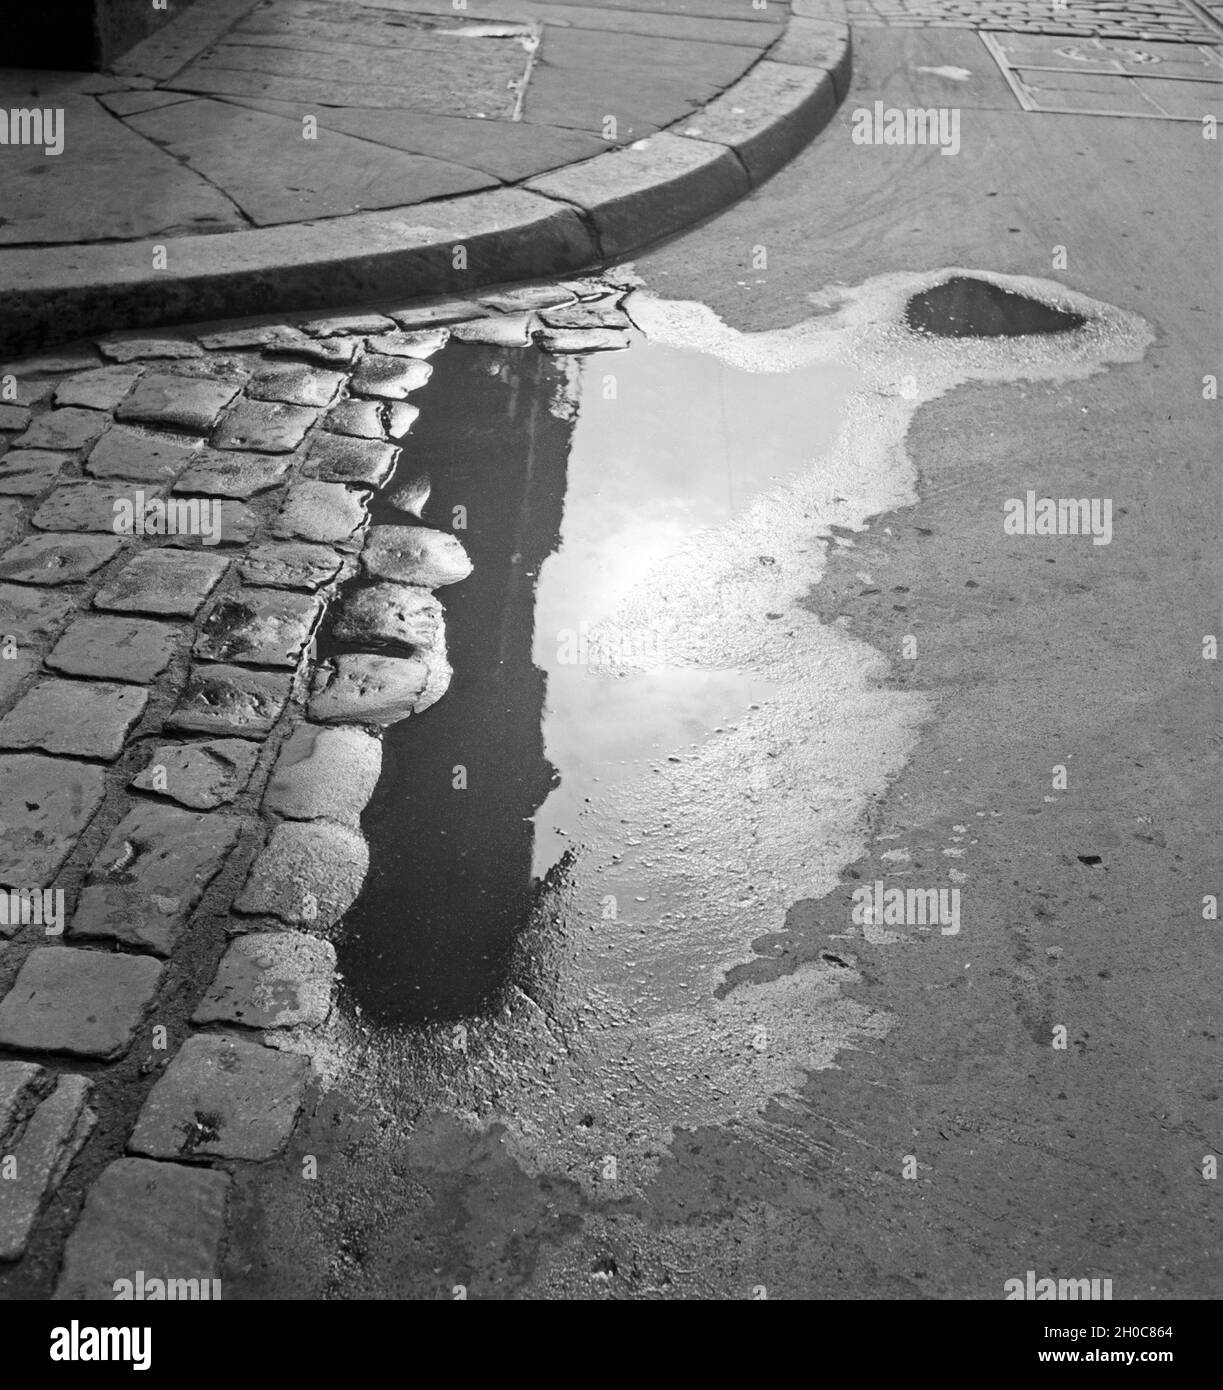 Eine Pfütze in einer Straße in Braunschweig, Deutschland. A puddle in the streets of Braunschweig, Germany. Stock Photo